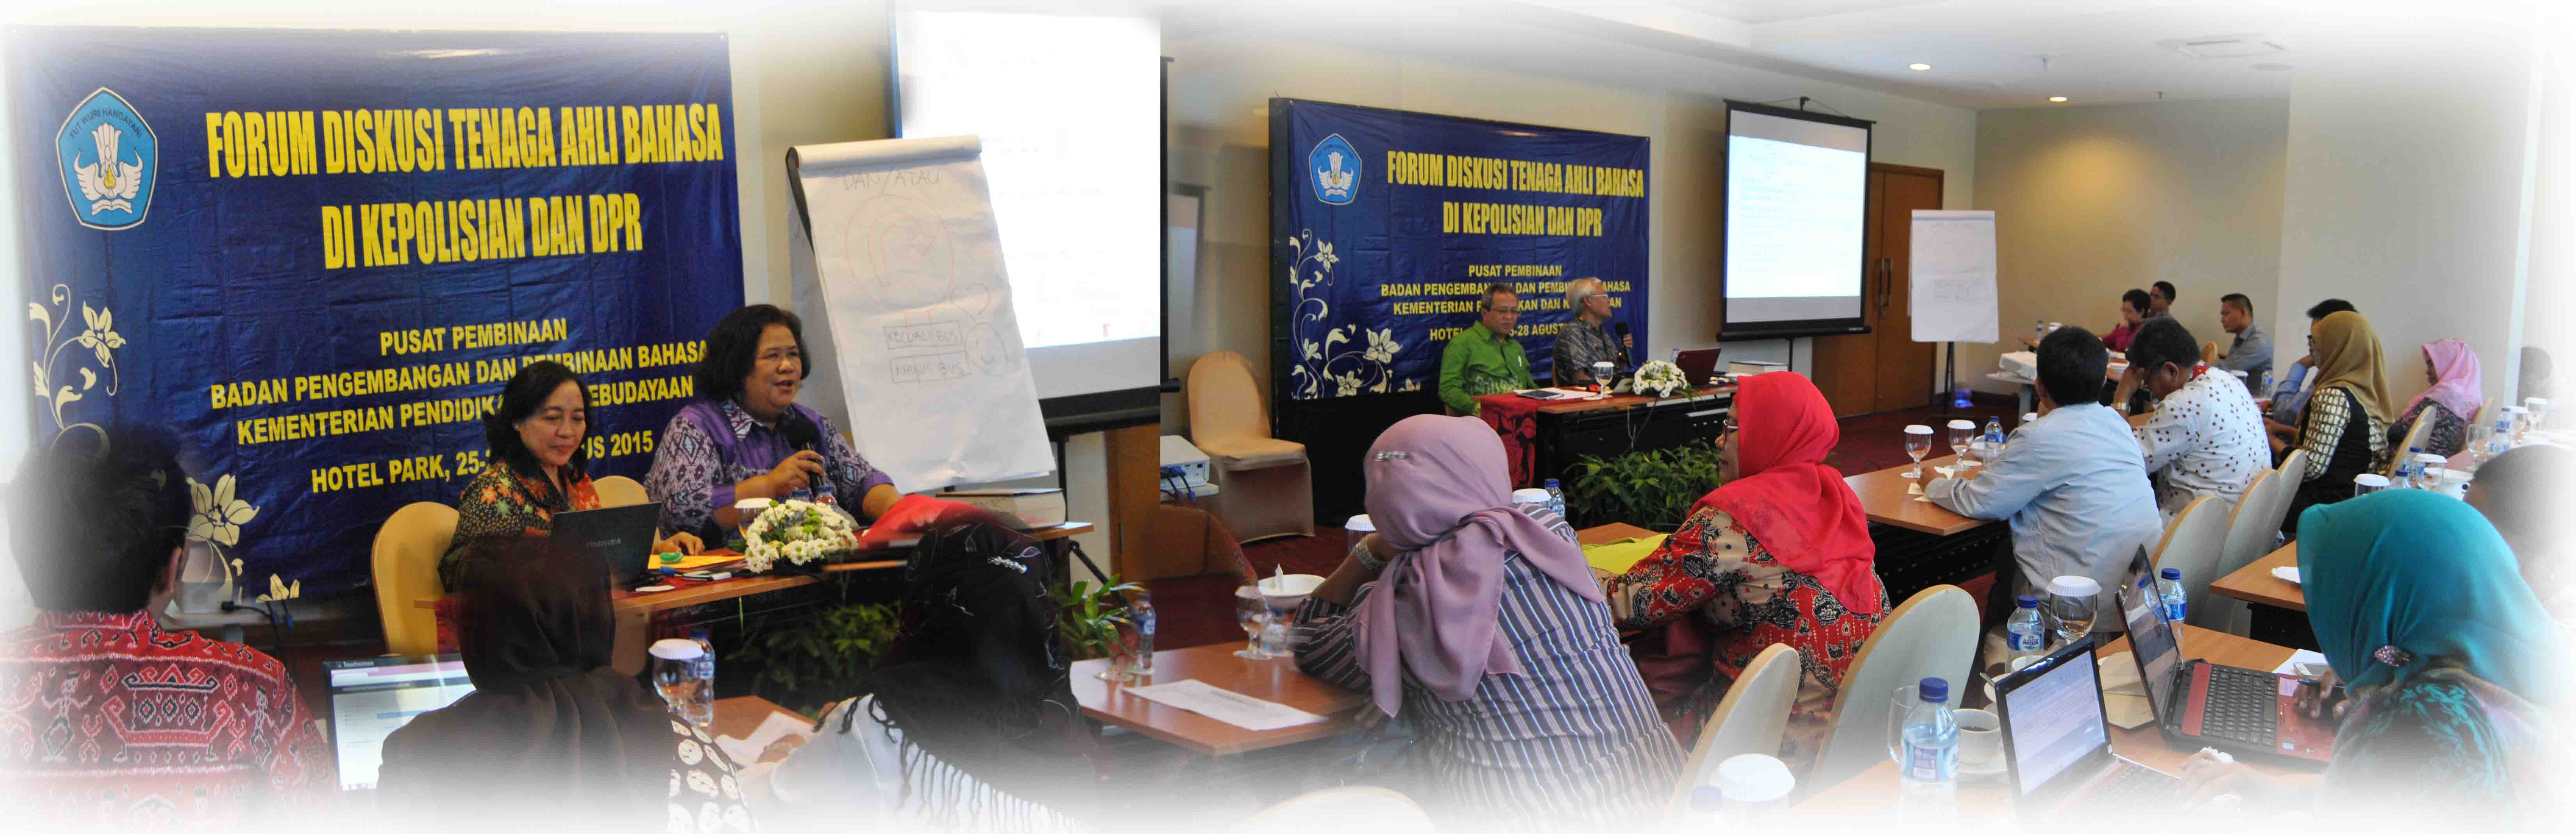 Forum Diskusi Tenaga Ahli Bahasa di Kepolisian dan DPR